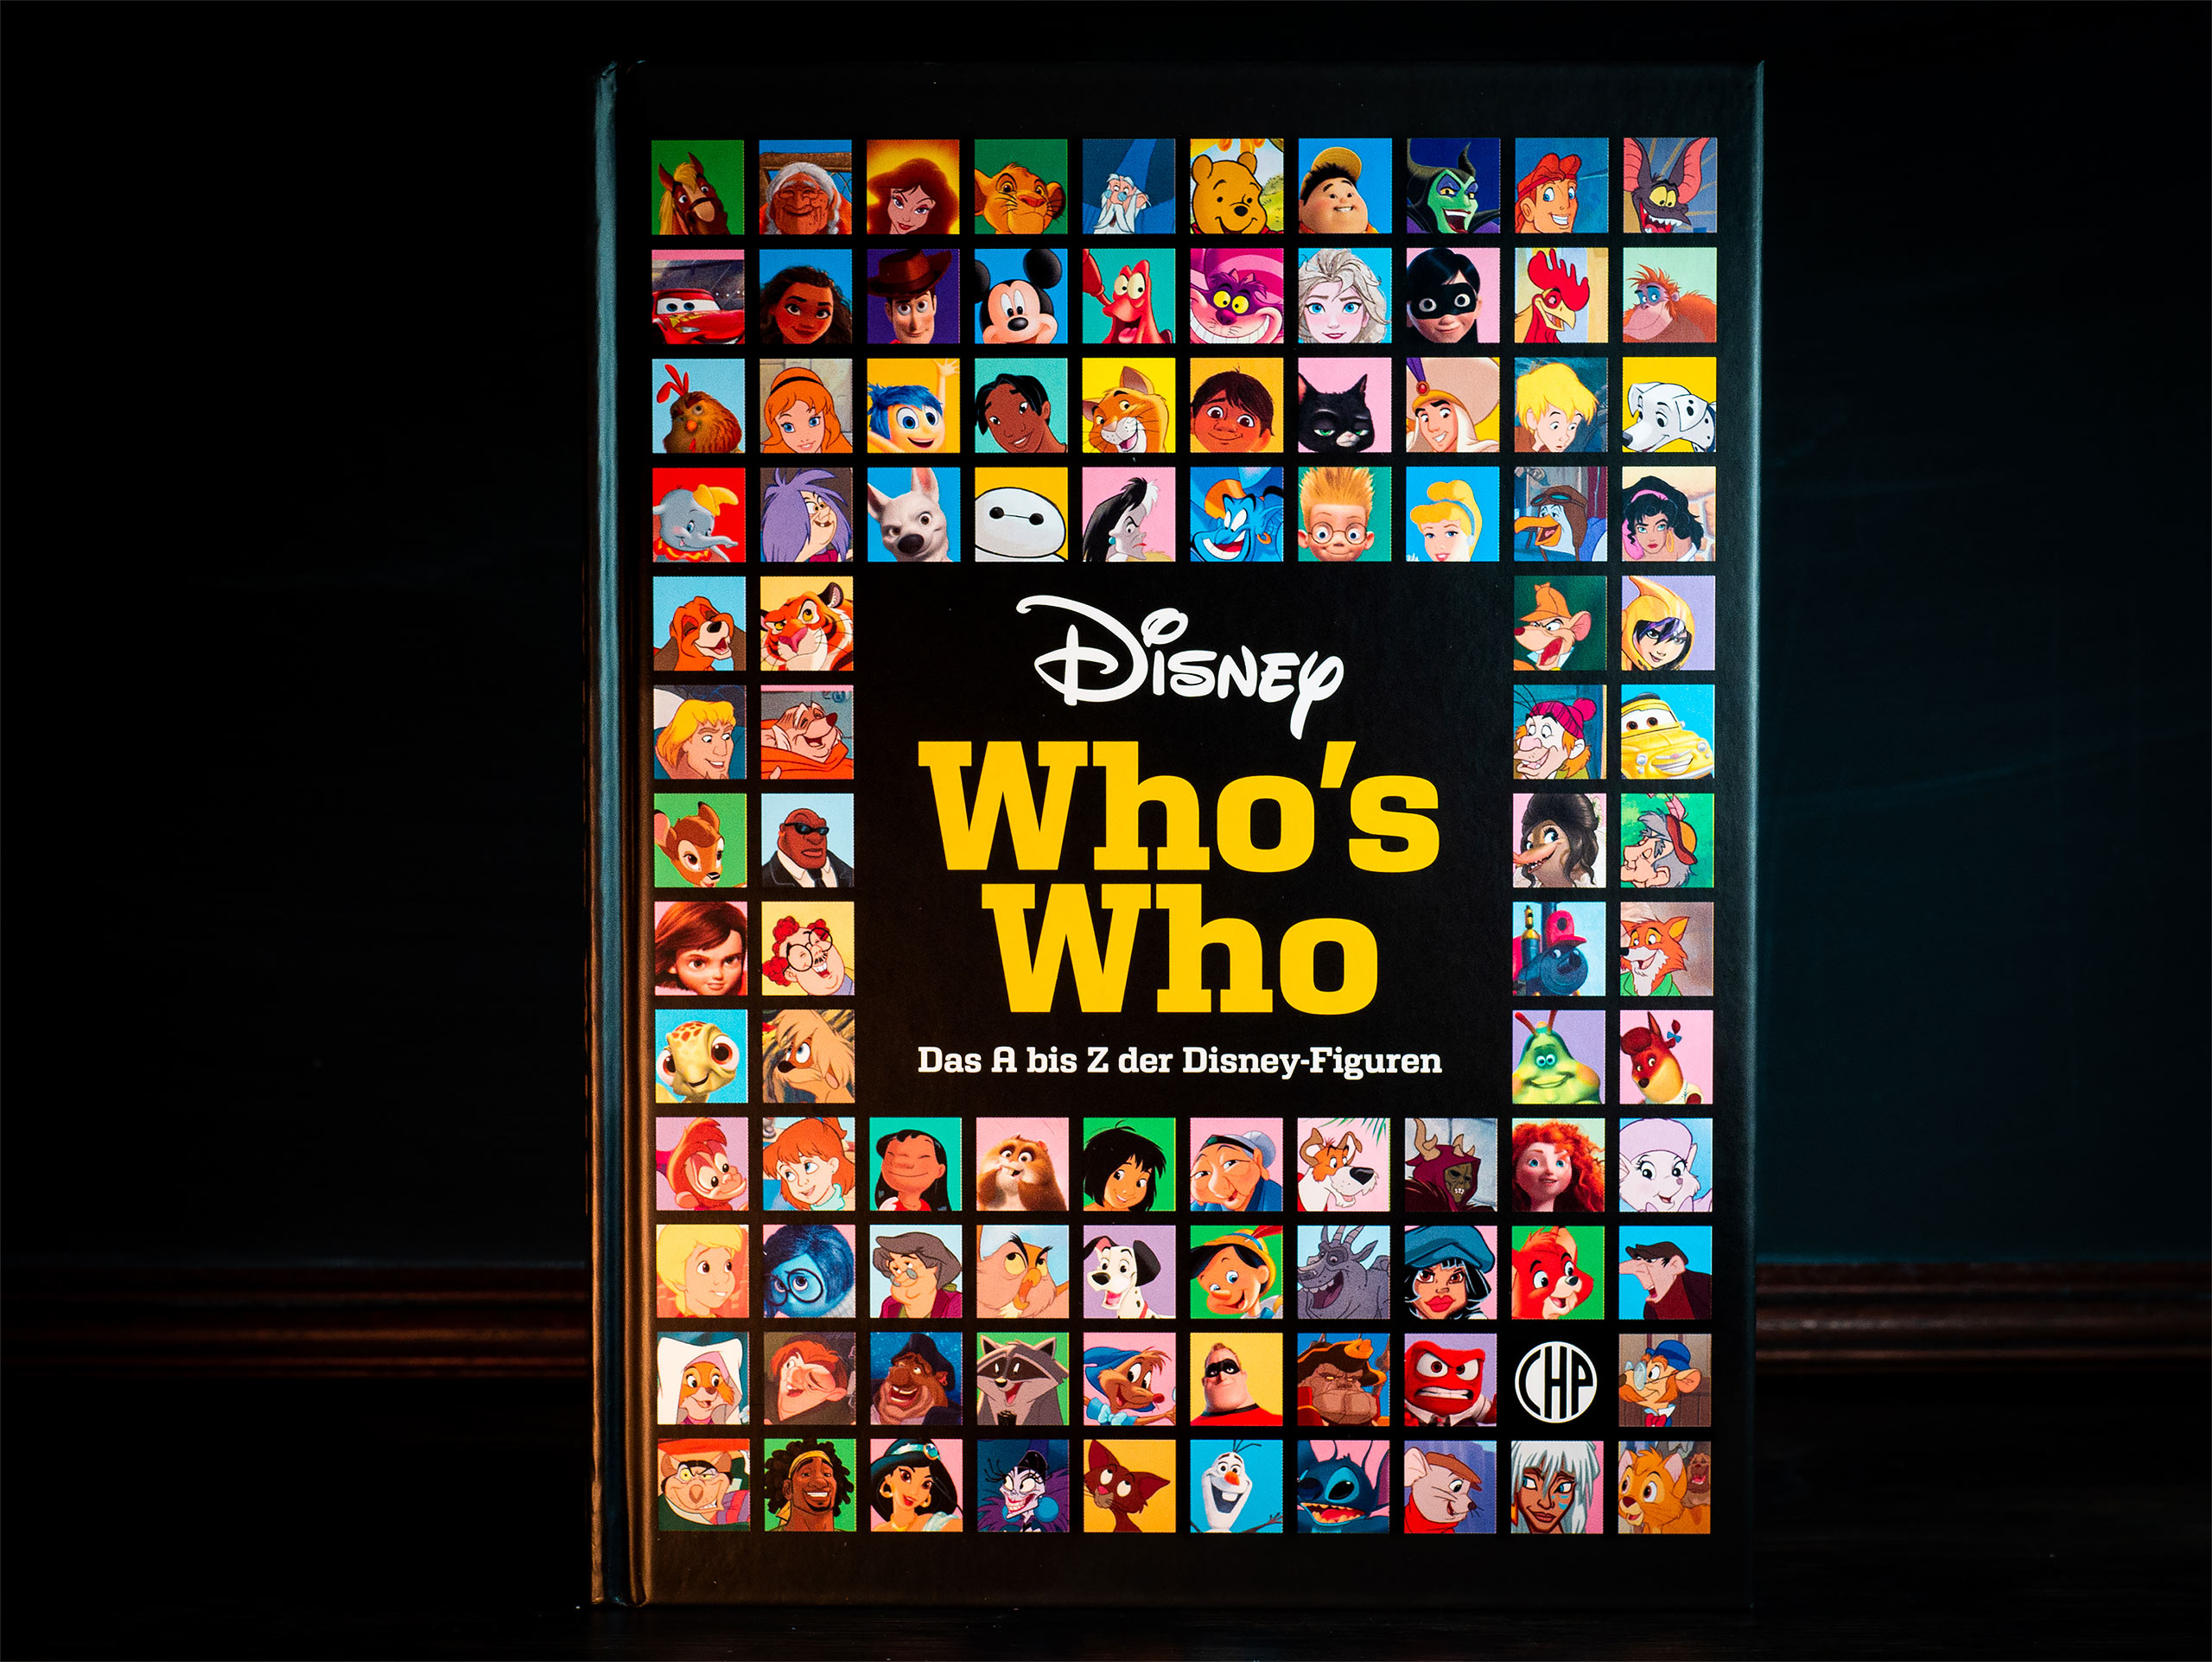 Disney - Who's Who - Das A bis Z der Disney-Figuren